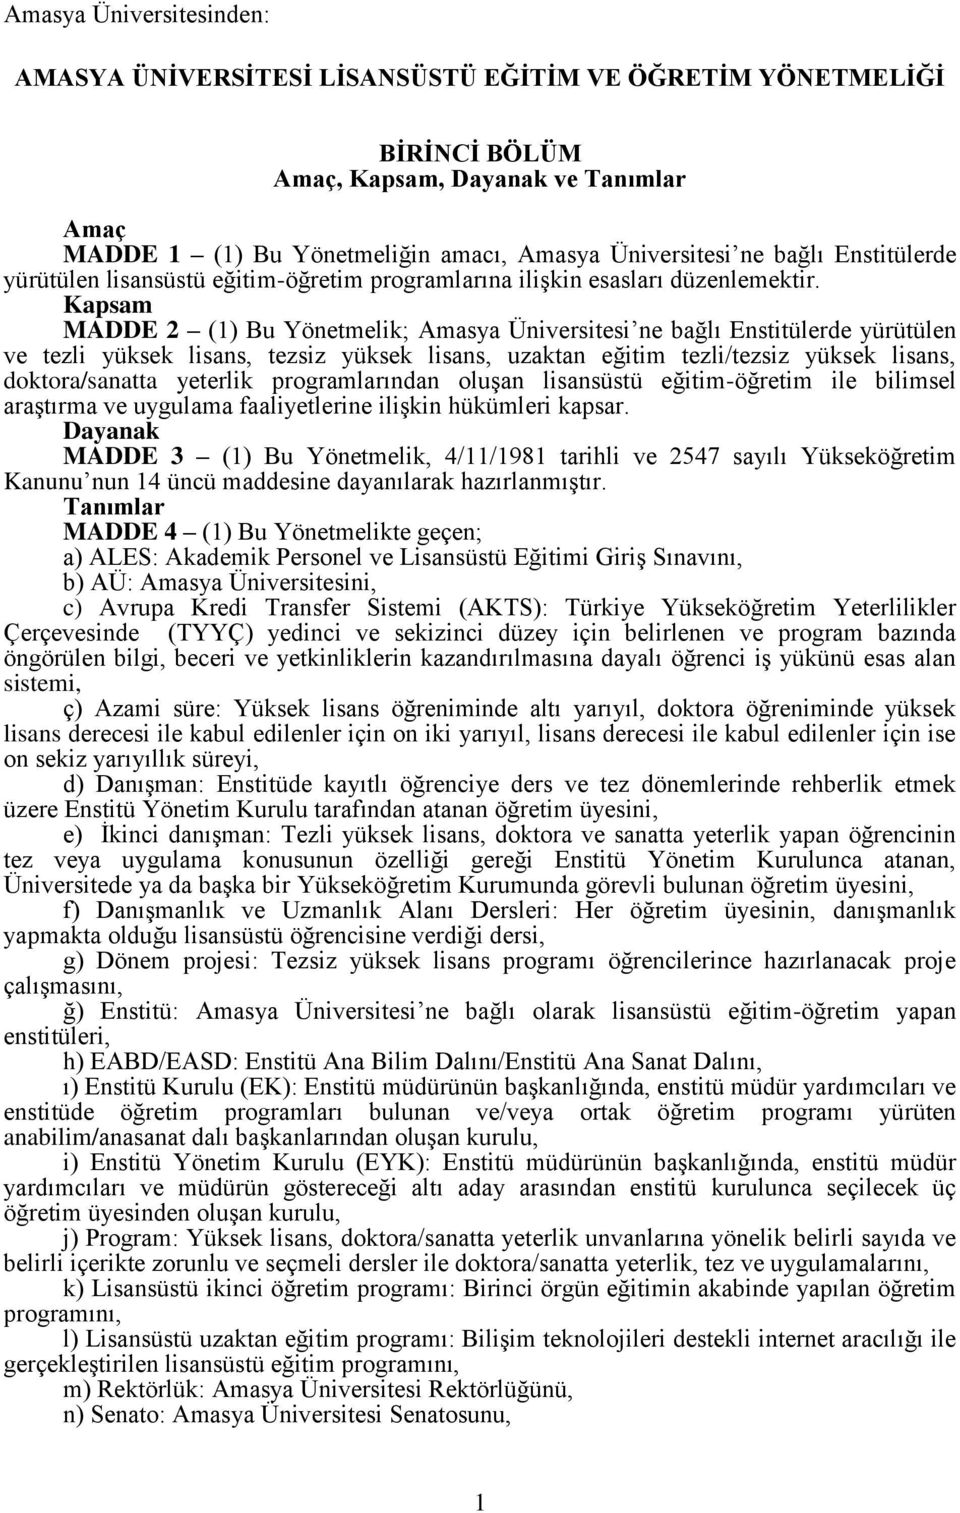 Kapsam MADDE 2 (1) Bu Yönetmelik; Amasya Üniversitesi ne bağlı Enstitülerde yürütülen ve tezli yüksek lisans, tezsiz yüksek lisans, uzaktan eğitim tezli/tezsiz yüksek lisans, doktora/sanatta yeterlik